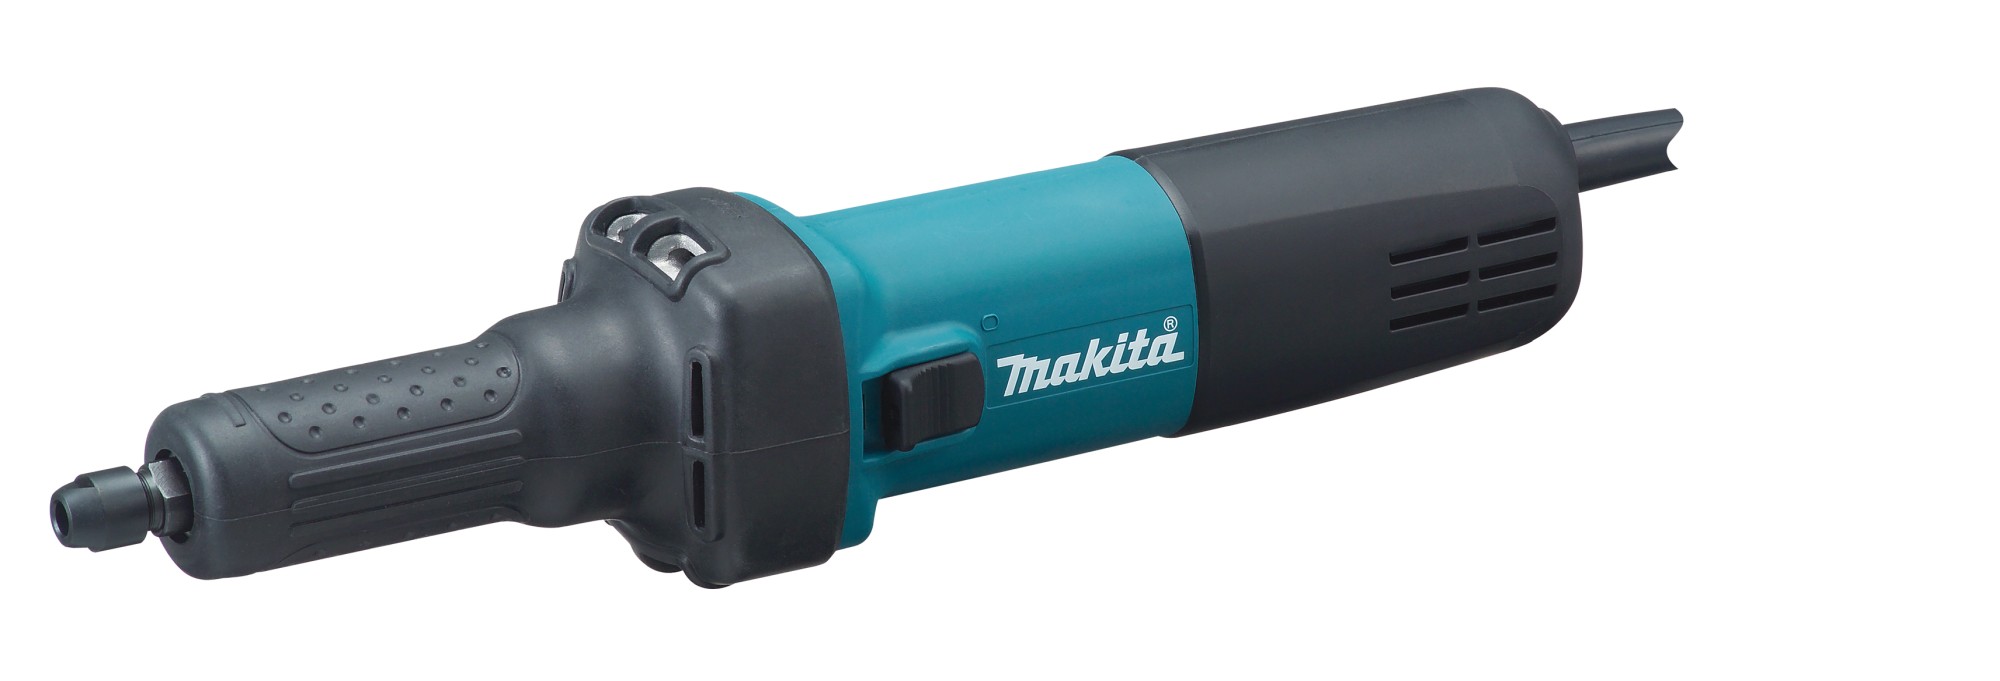 Makita GD0601 Amoladora recta 400W 6mm MAK-GD0601 | AMOLADORAS